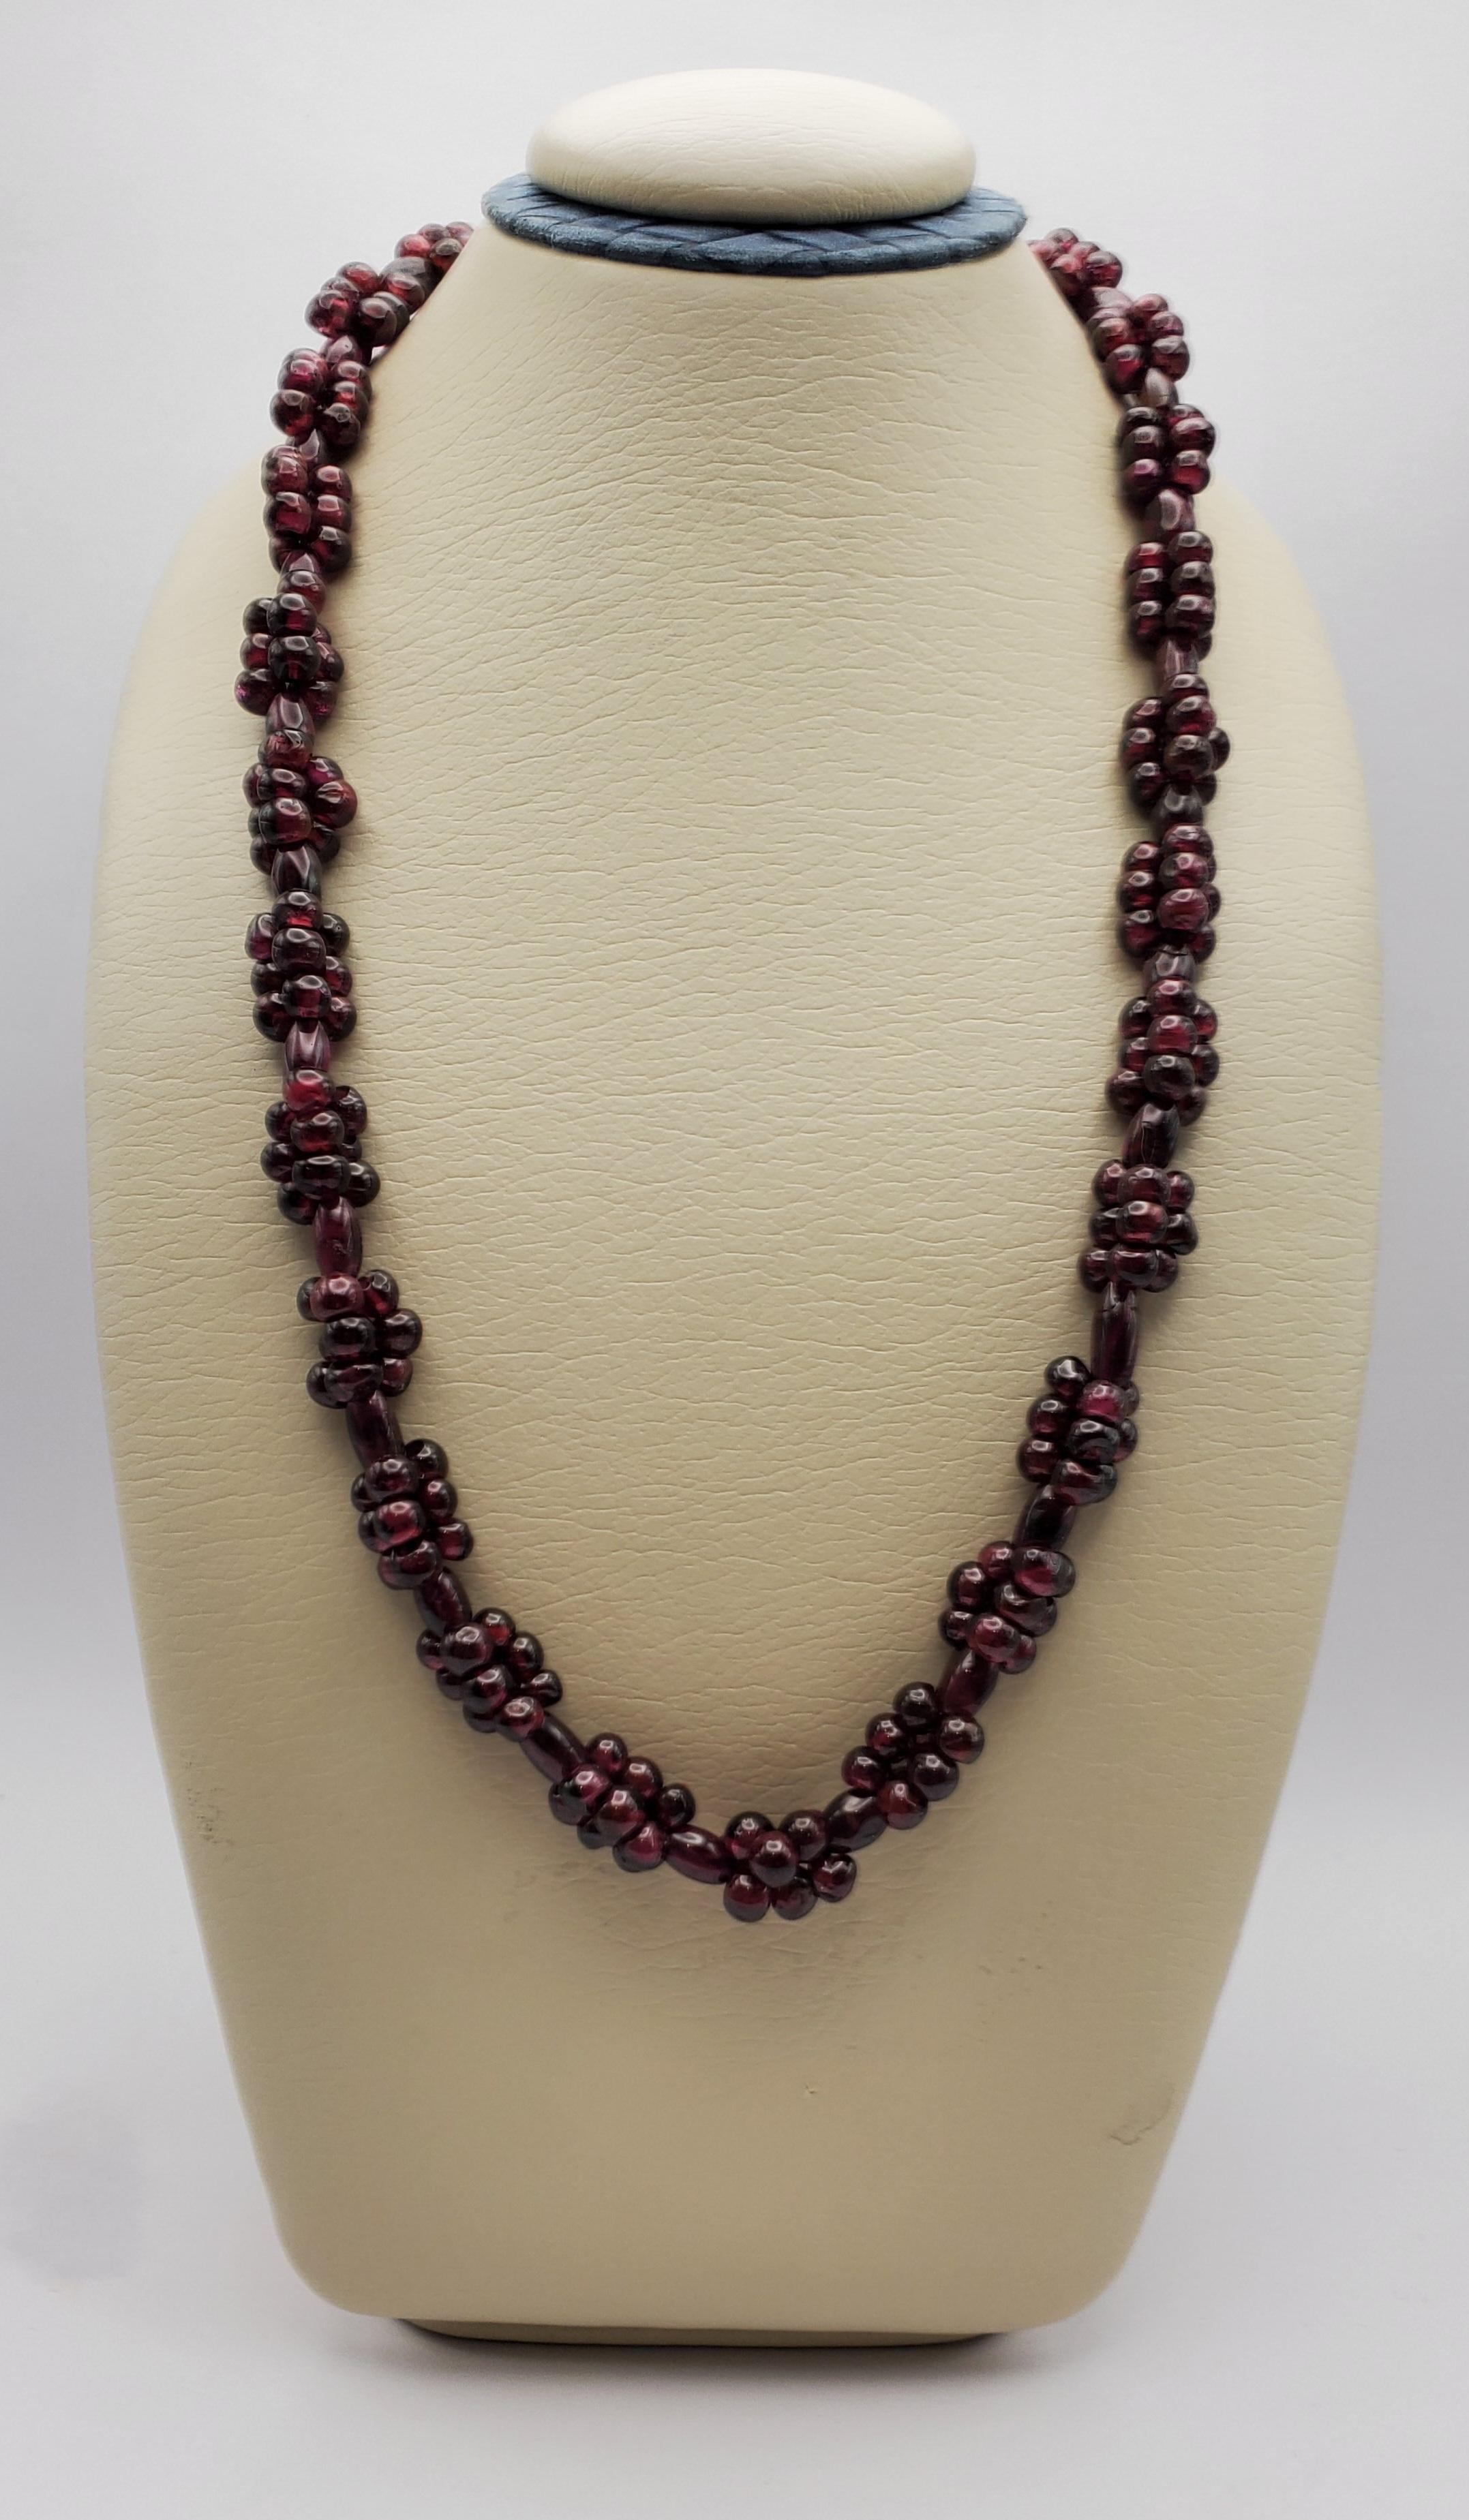 Magnifique collier continu en grappe de perles de grenat polies, datant des années 1970. Les perles ont la riche couleur des raisins rouges et brillent en grappes attrayantes, ajoutant une texture intéressante à ce brin. Le collier n'a pas de